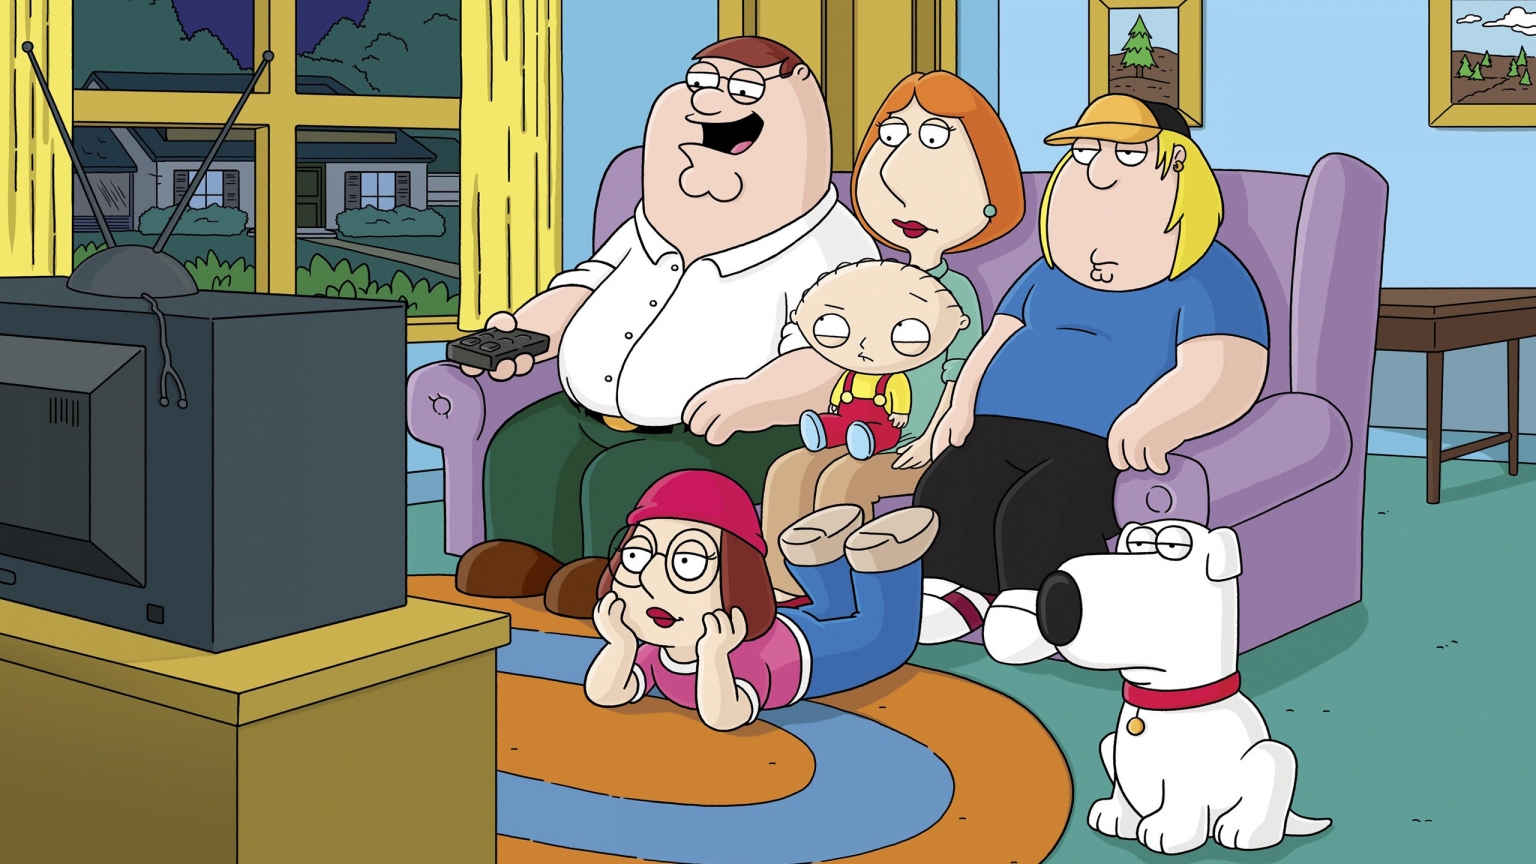 Family Guy for 1536 x 864 HDTV resolution